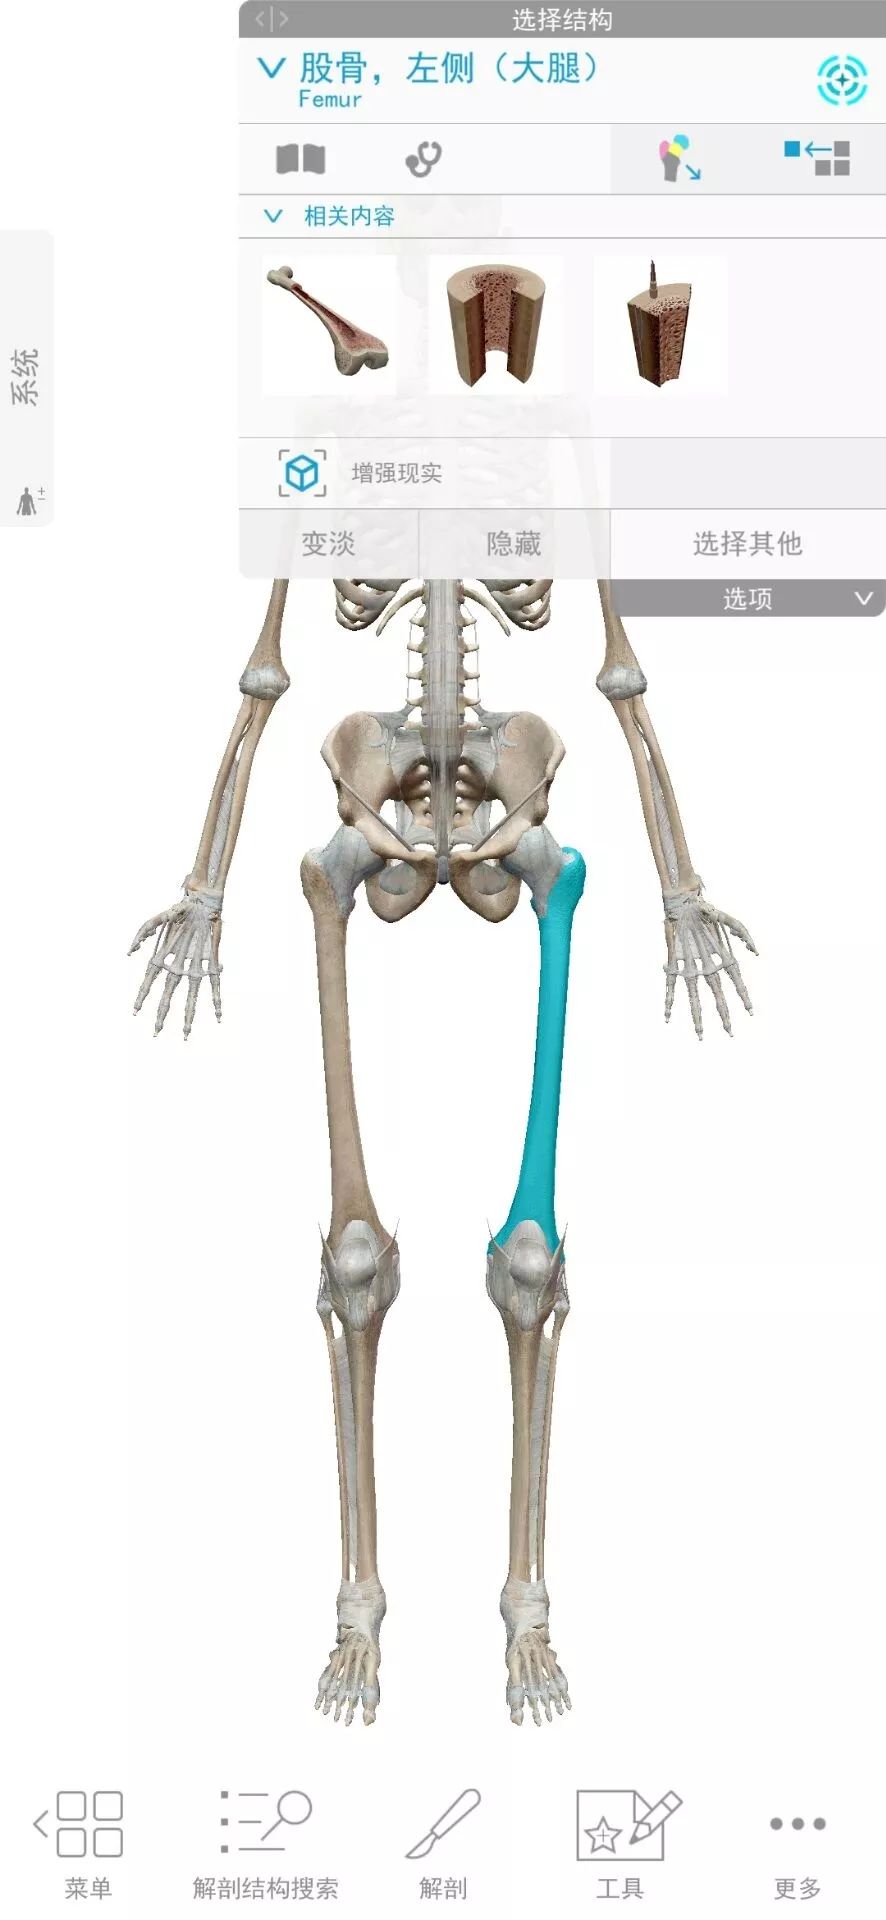 今天给大家分享一款人体解剖学图APP，内容极其重口，慎点！(图3)